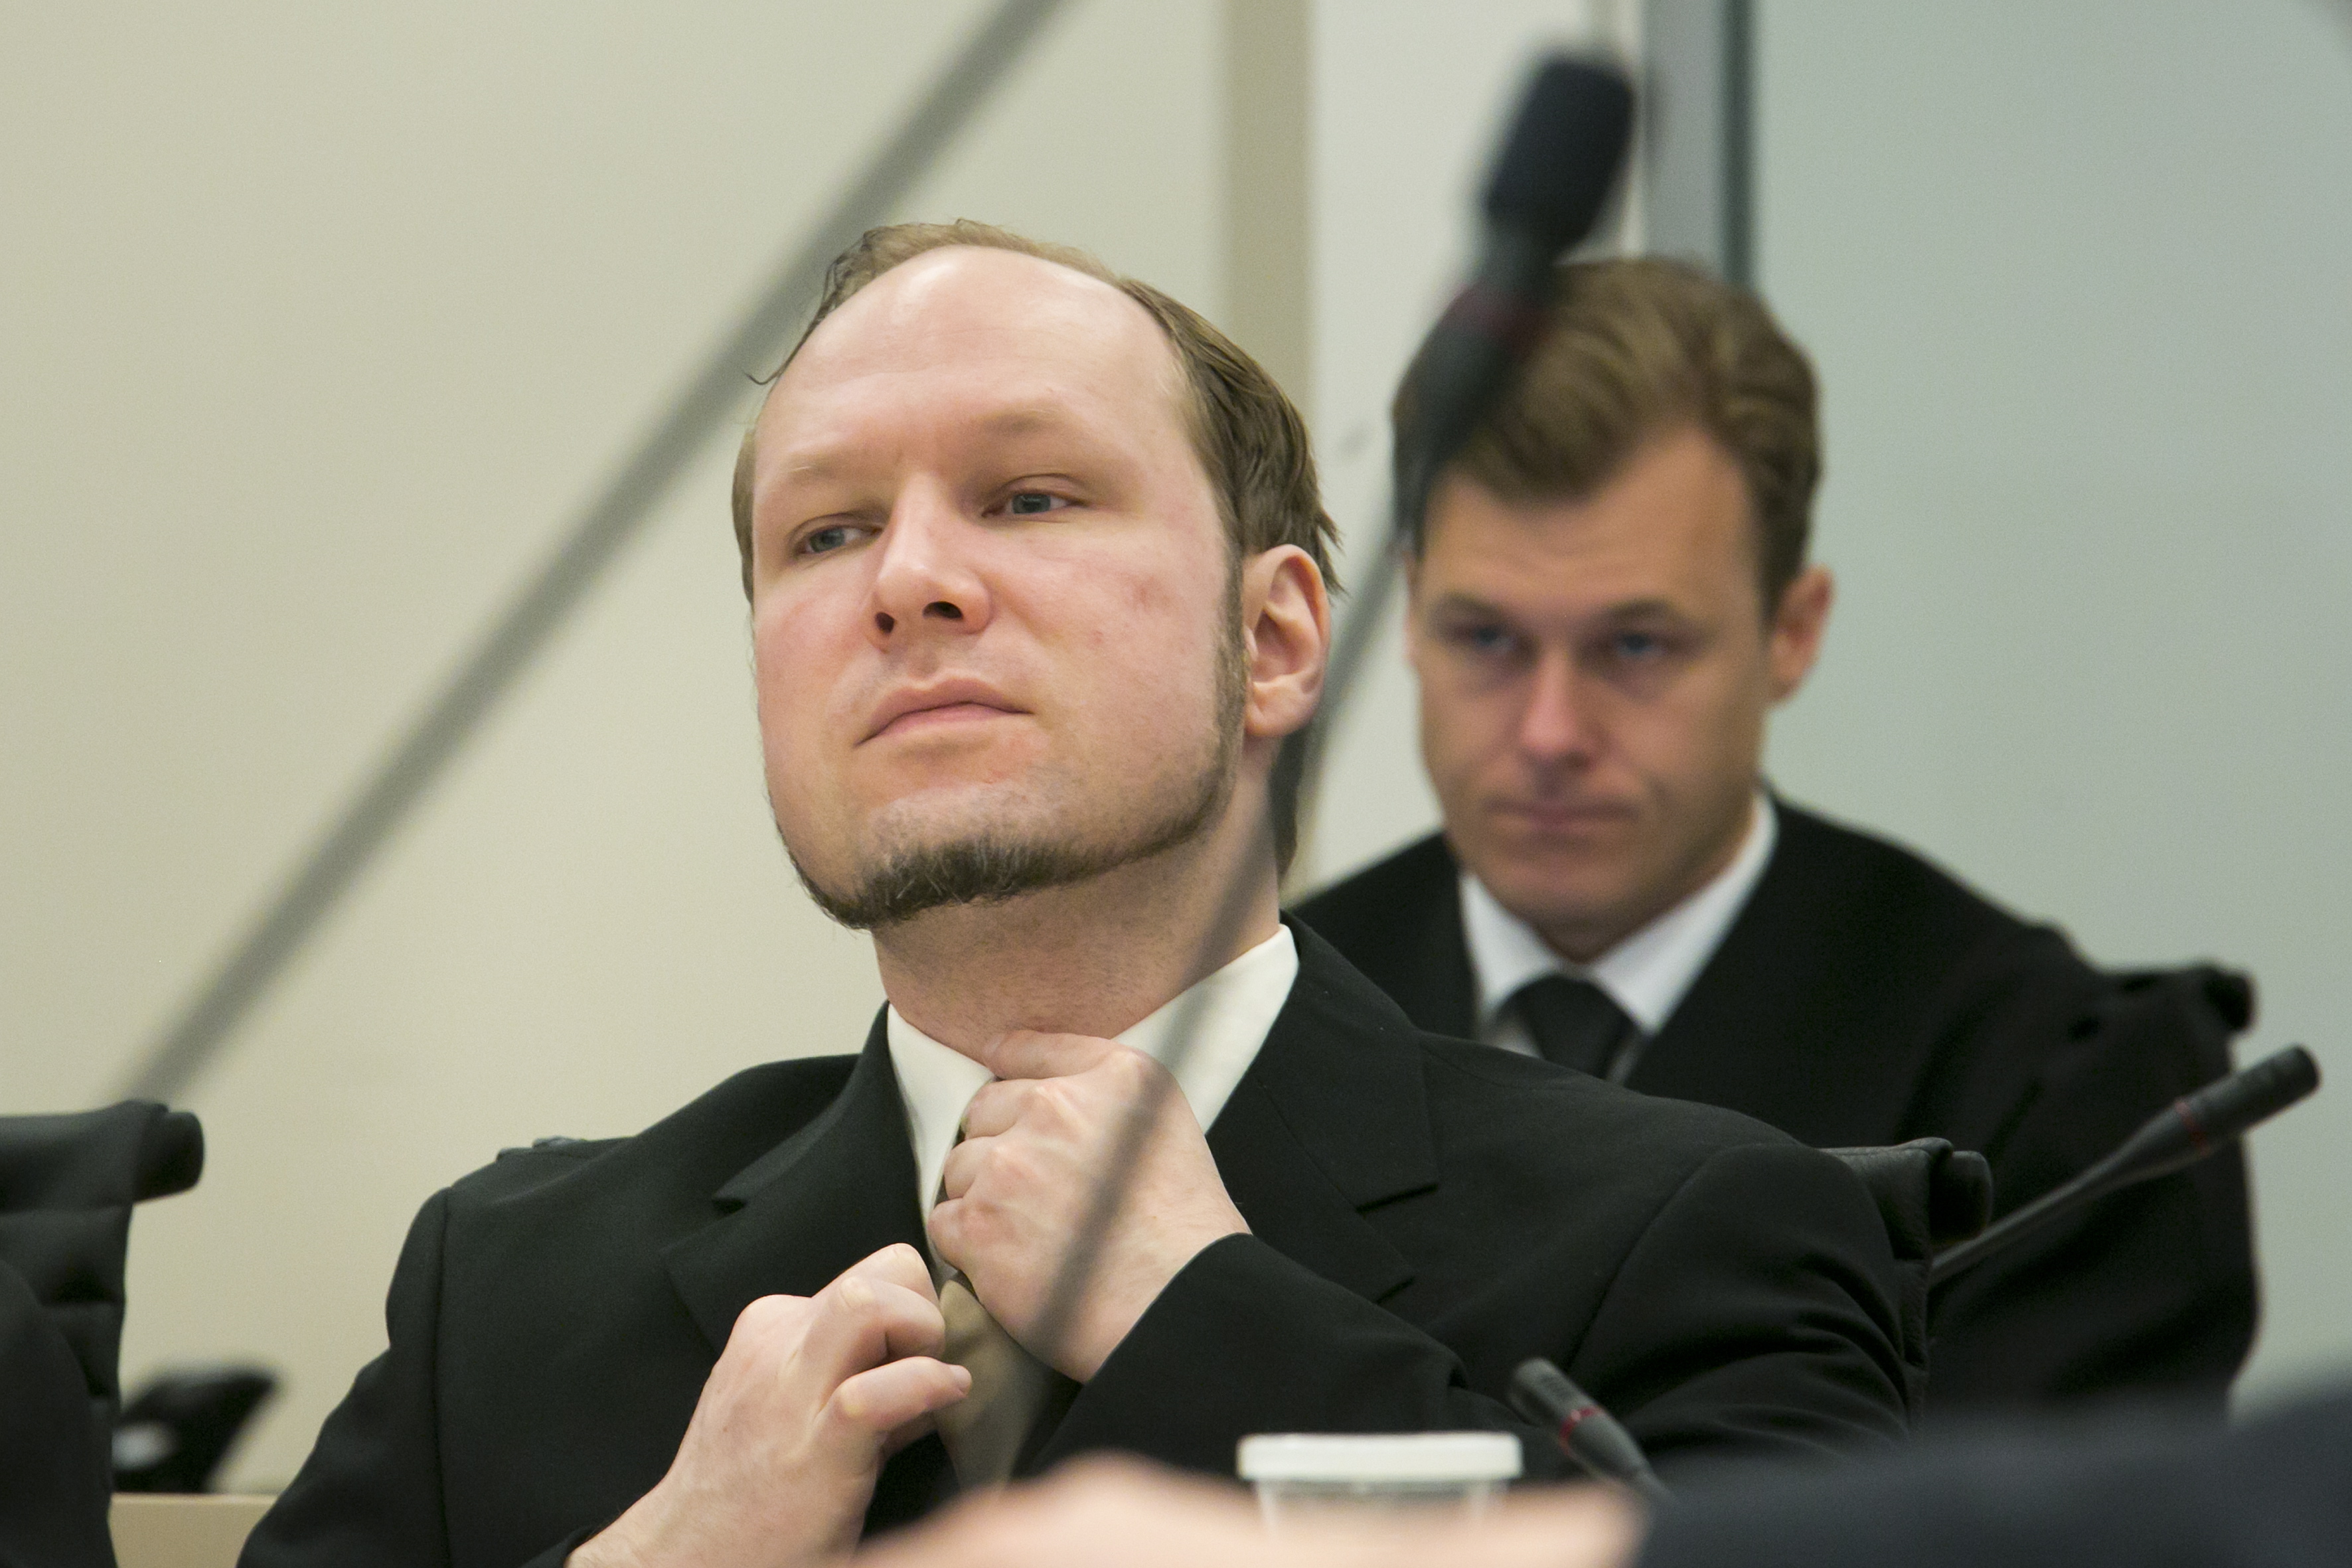 Norge, Oslo, Anders Behring Breivik, Utøya, Terrordåd